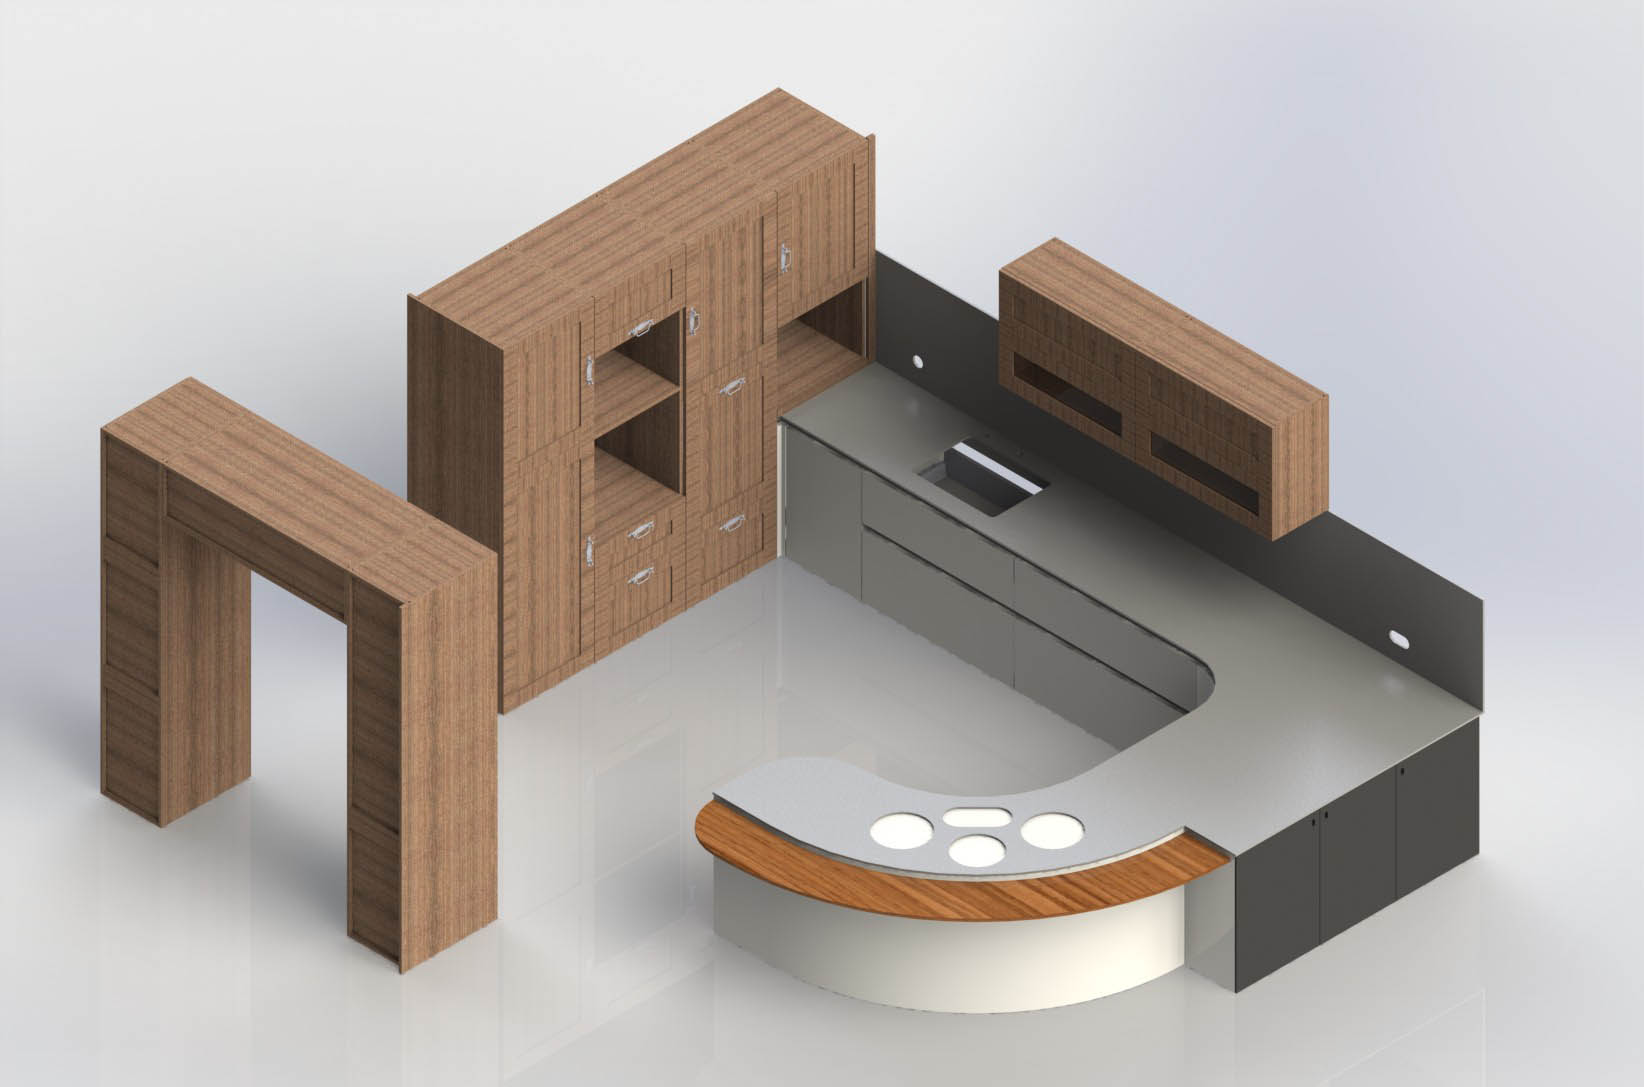 3D modelled Kitchen designed using SWOOD Eficad Software